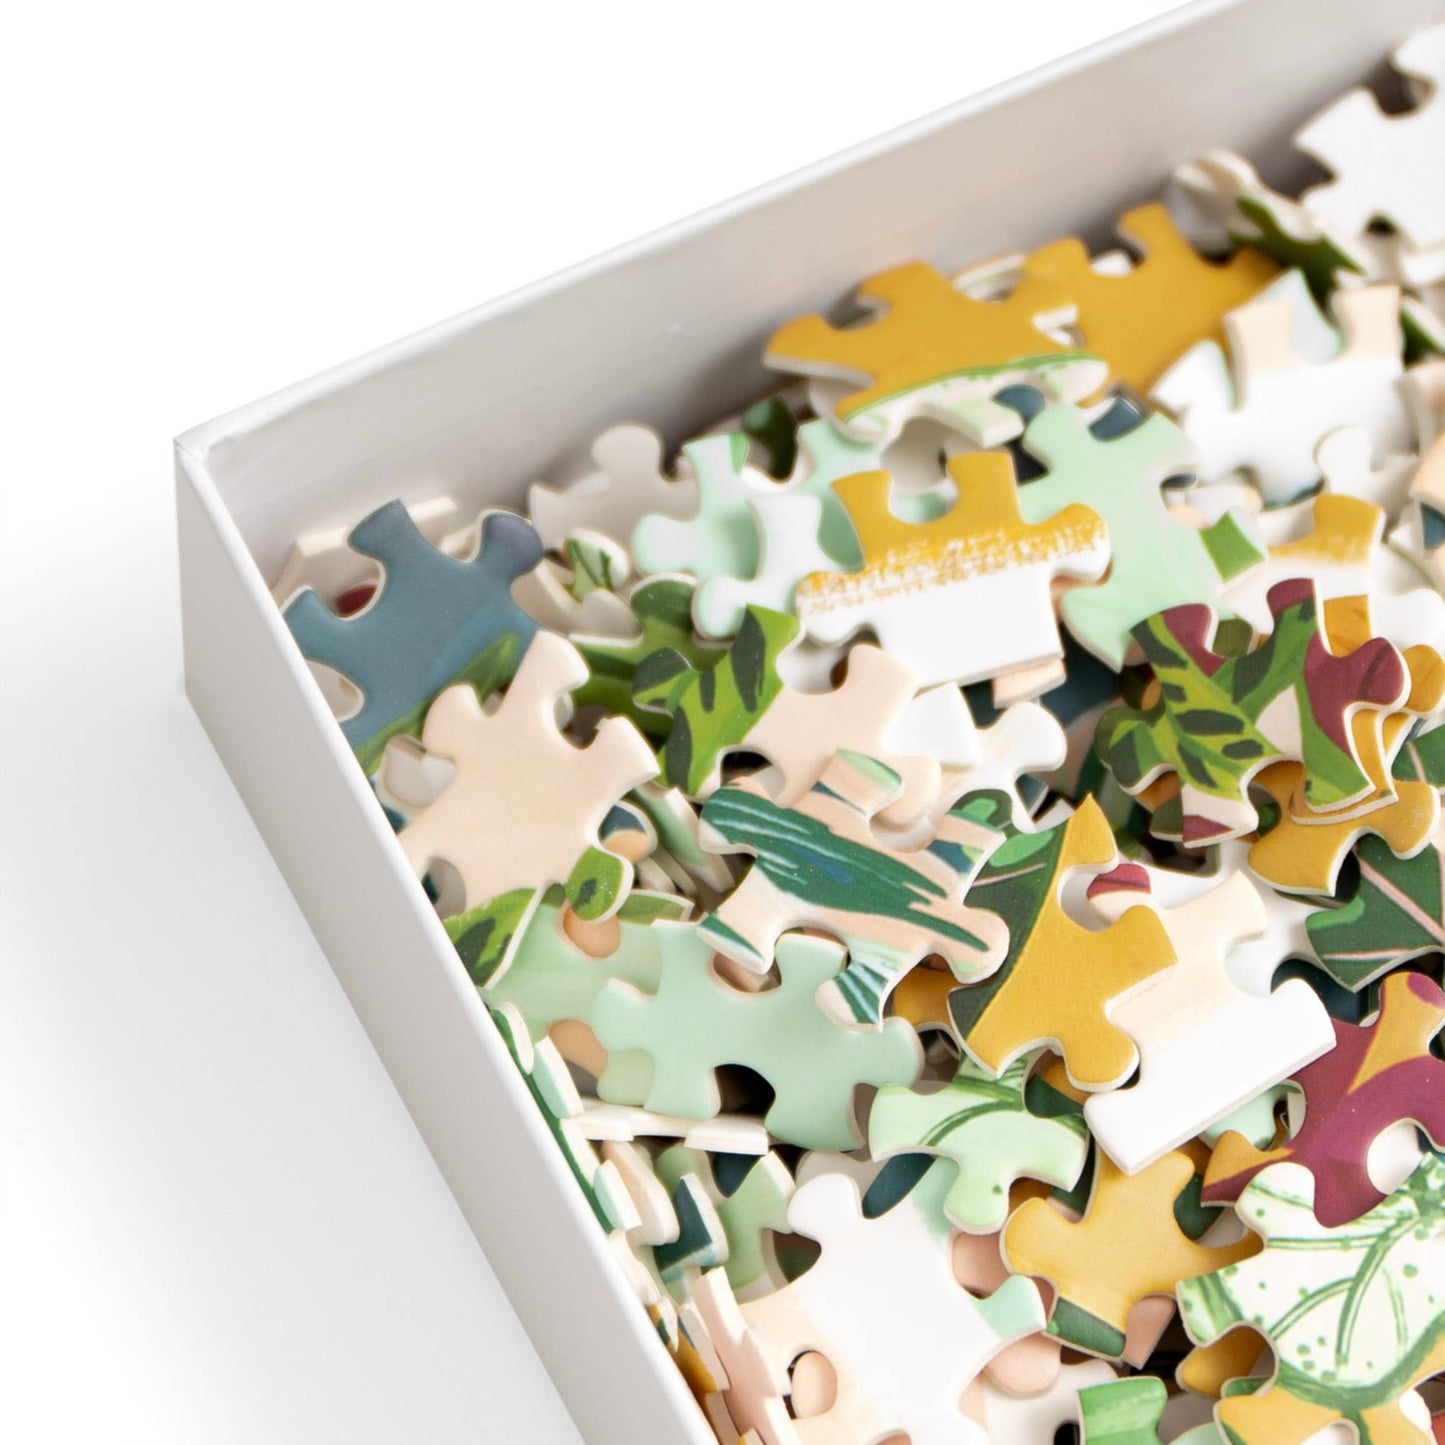 Houseplants Puzzle - 1,000 Piece Jigsaw Puzzle